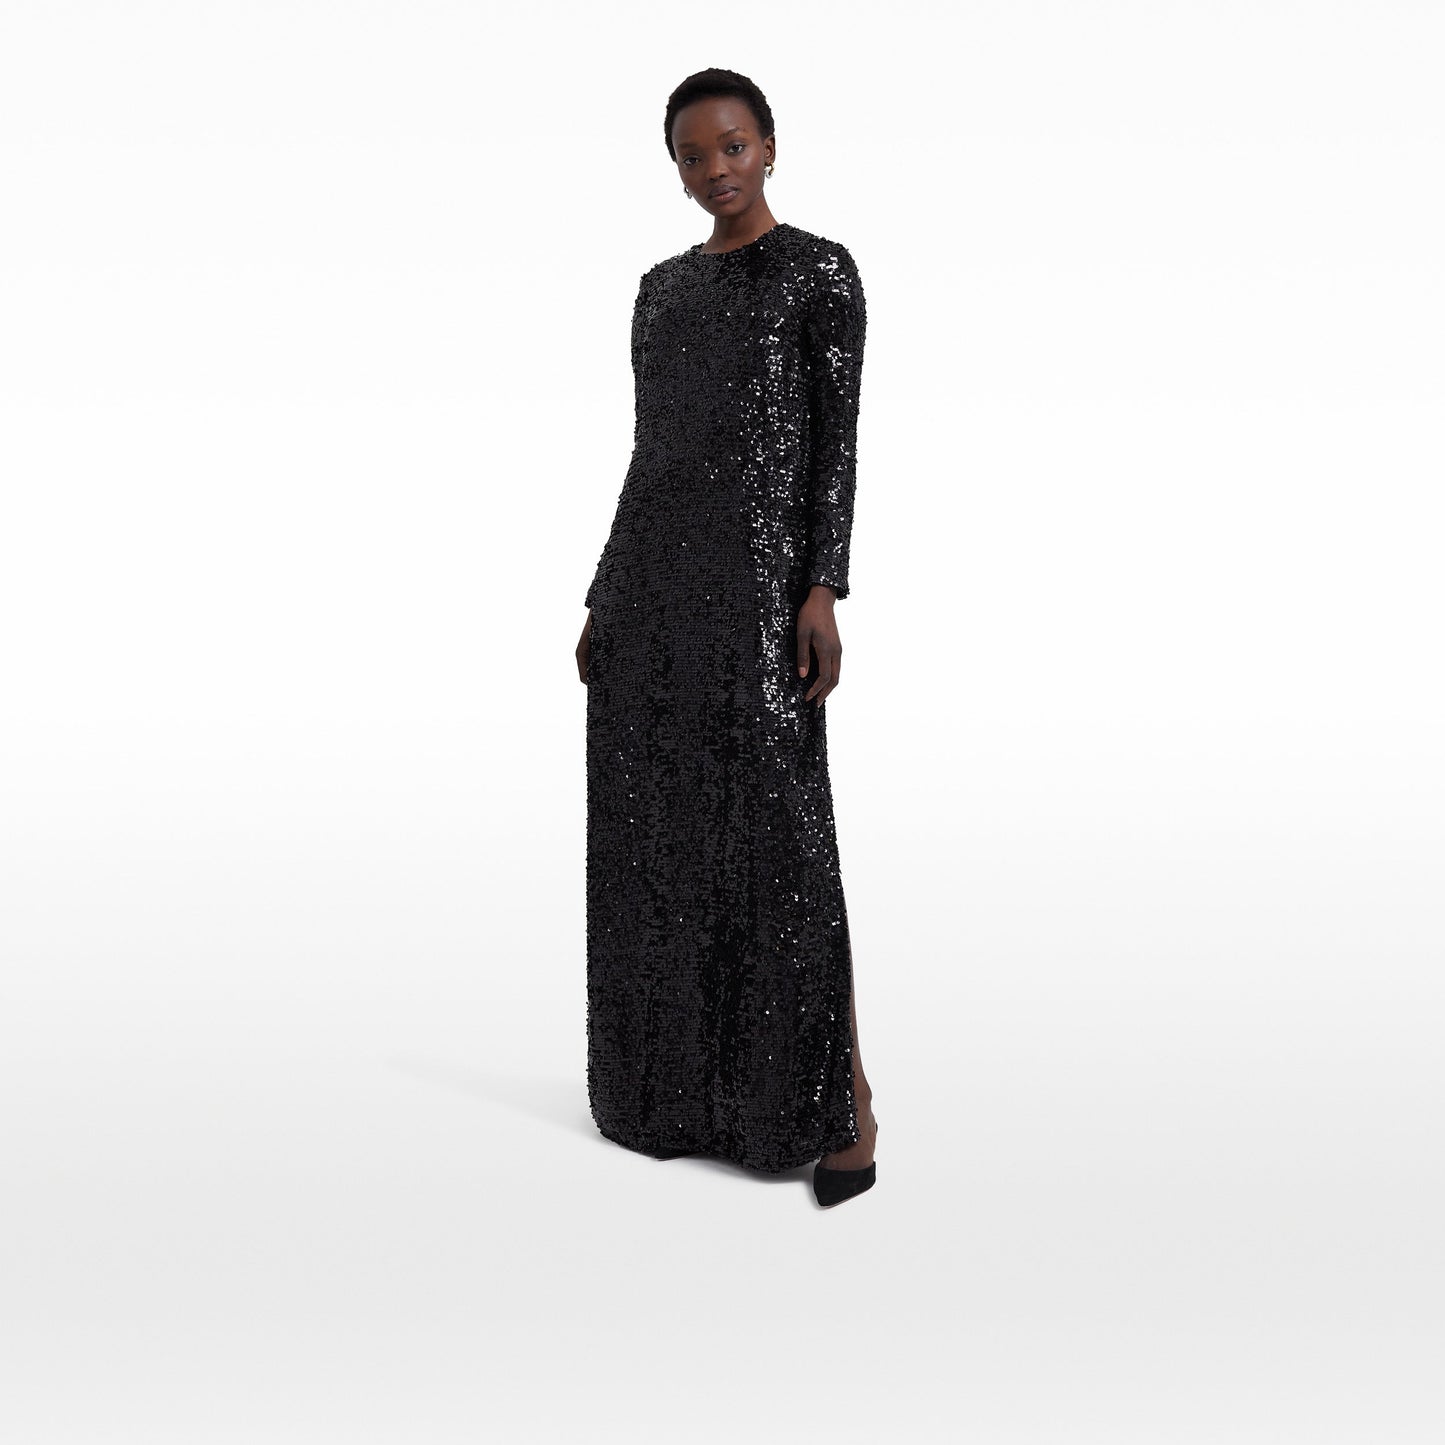 Naima Black Long Dress